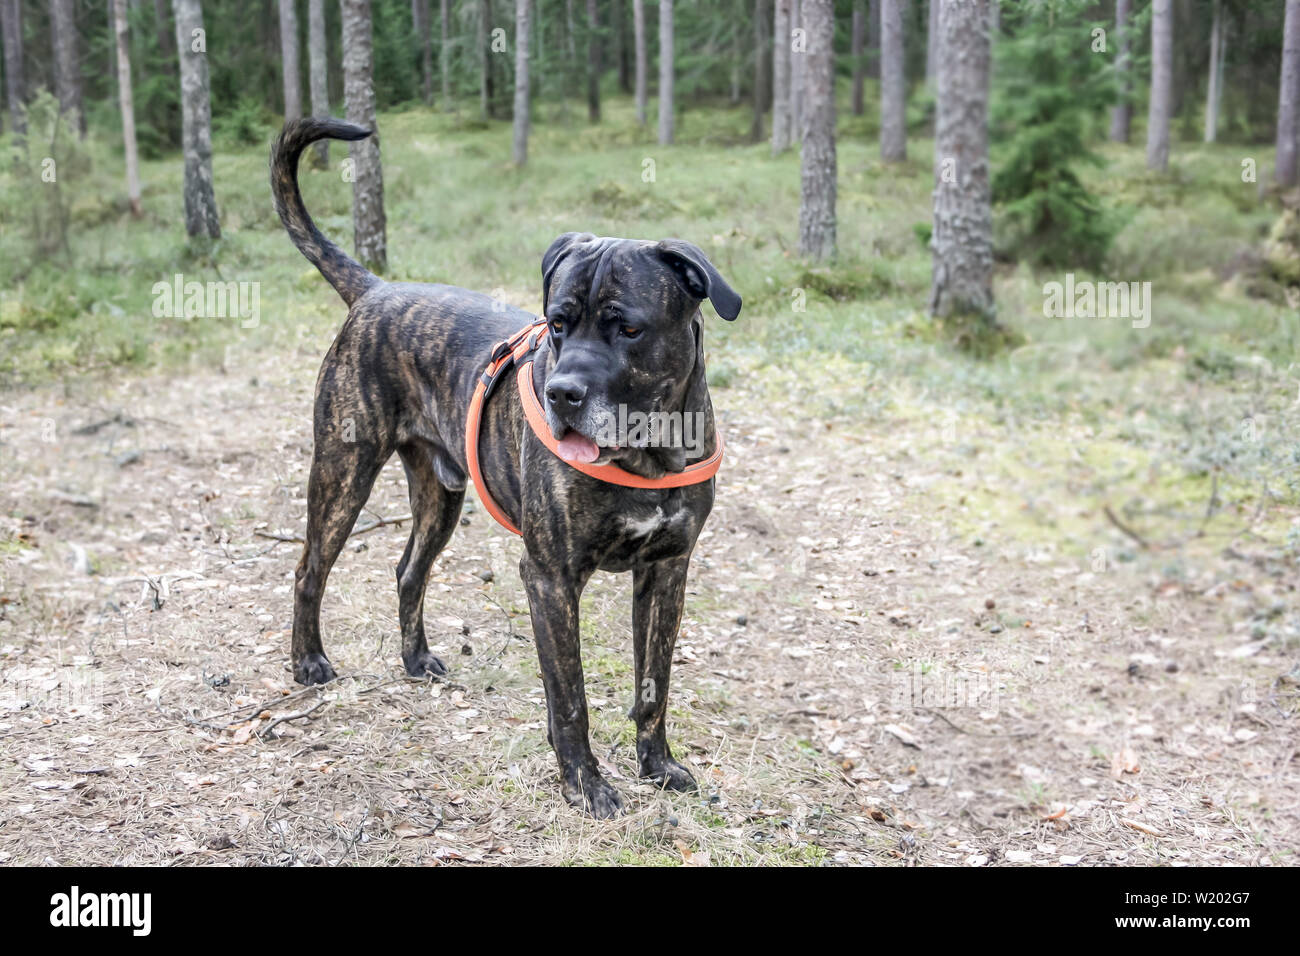 Cane Corso cane si alza e cerca nei boschi e la strada Foto Stock